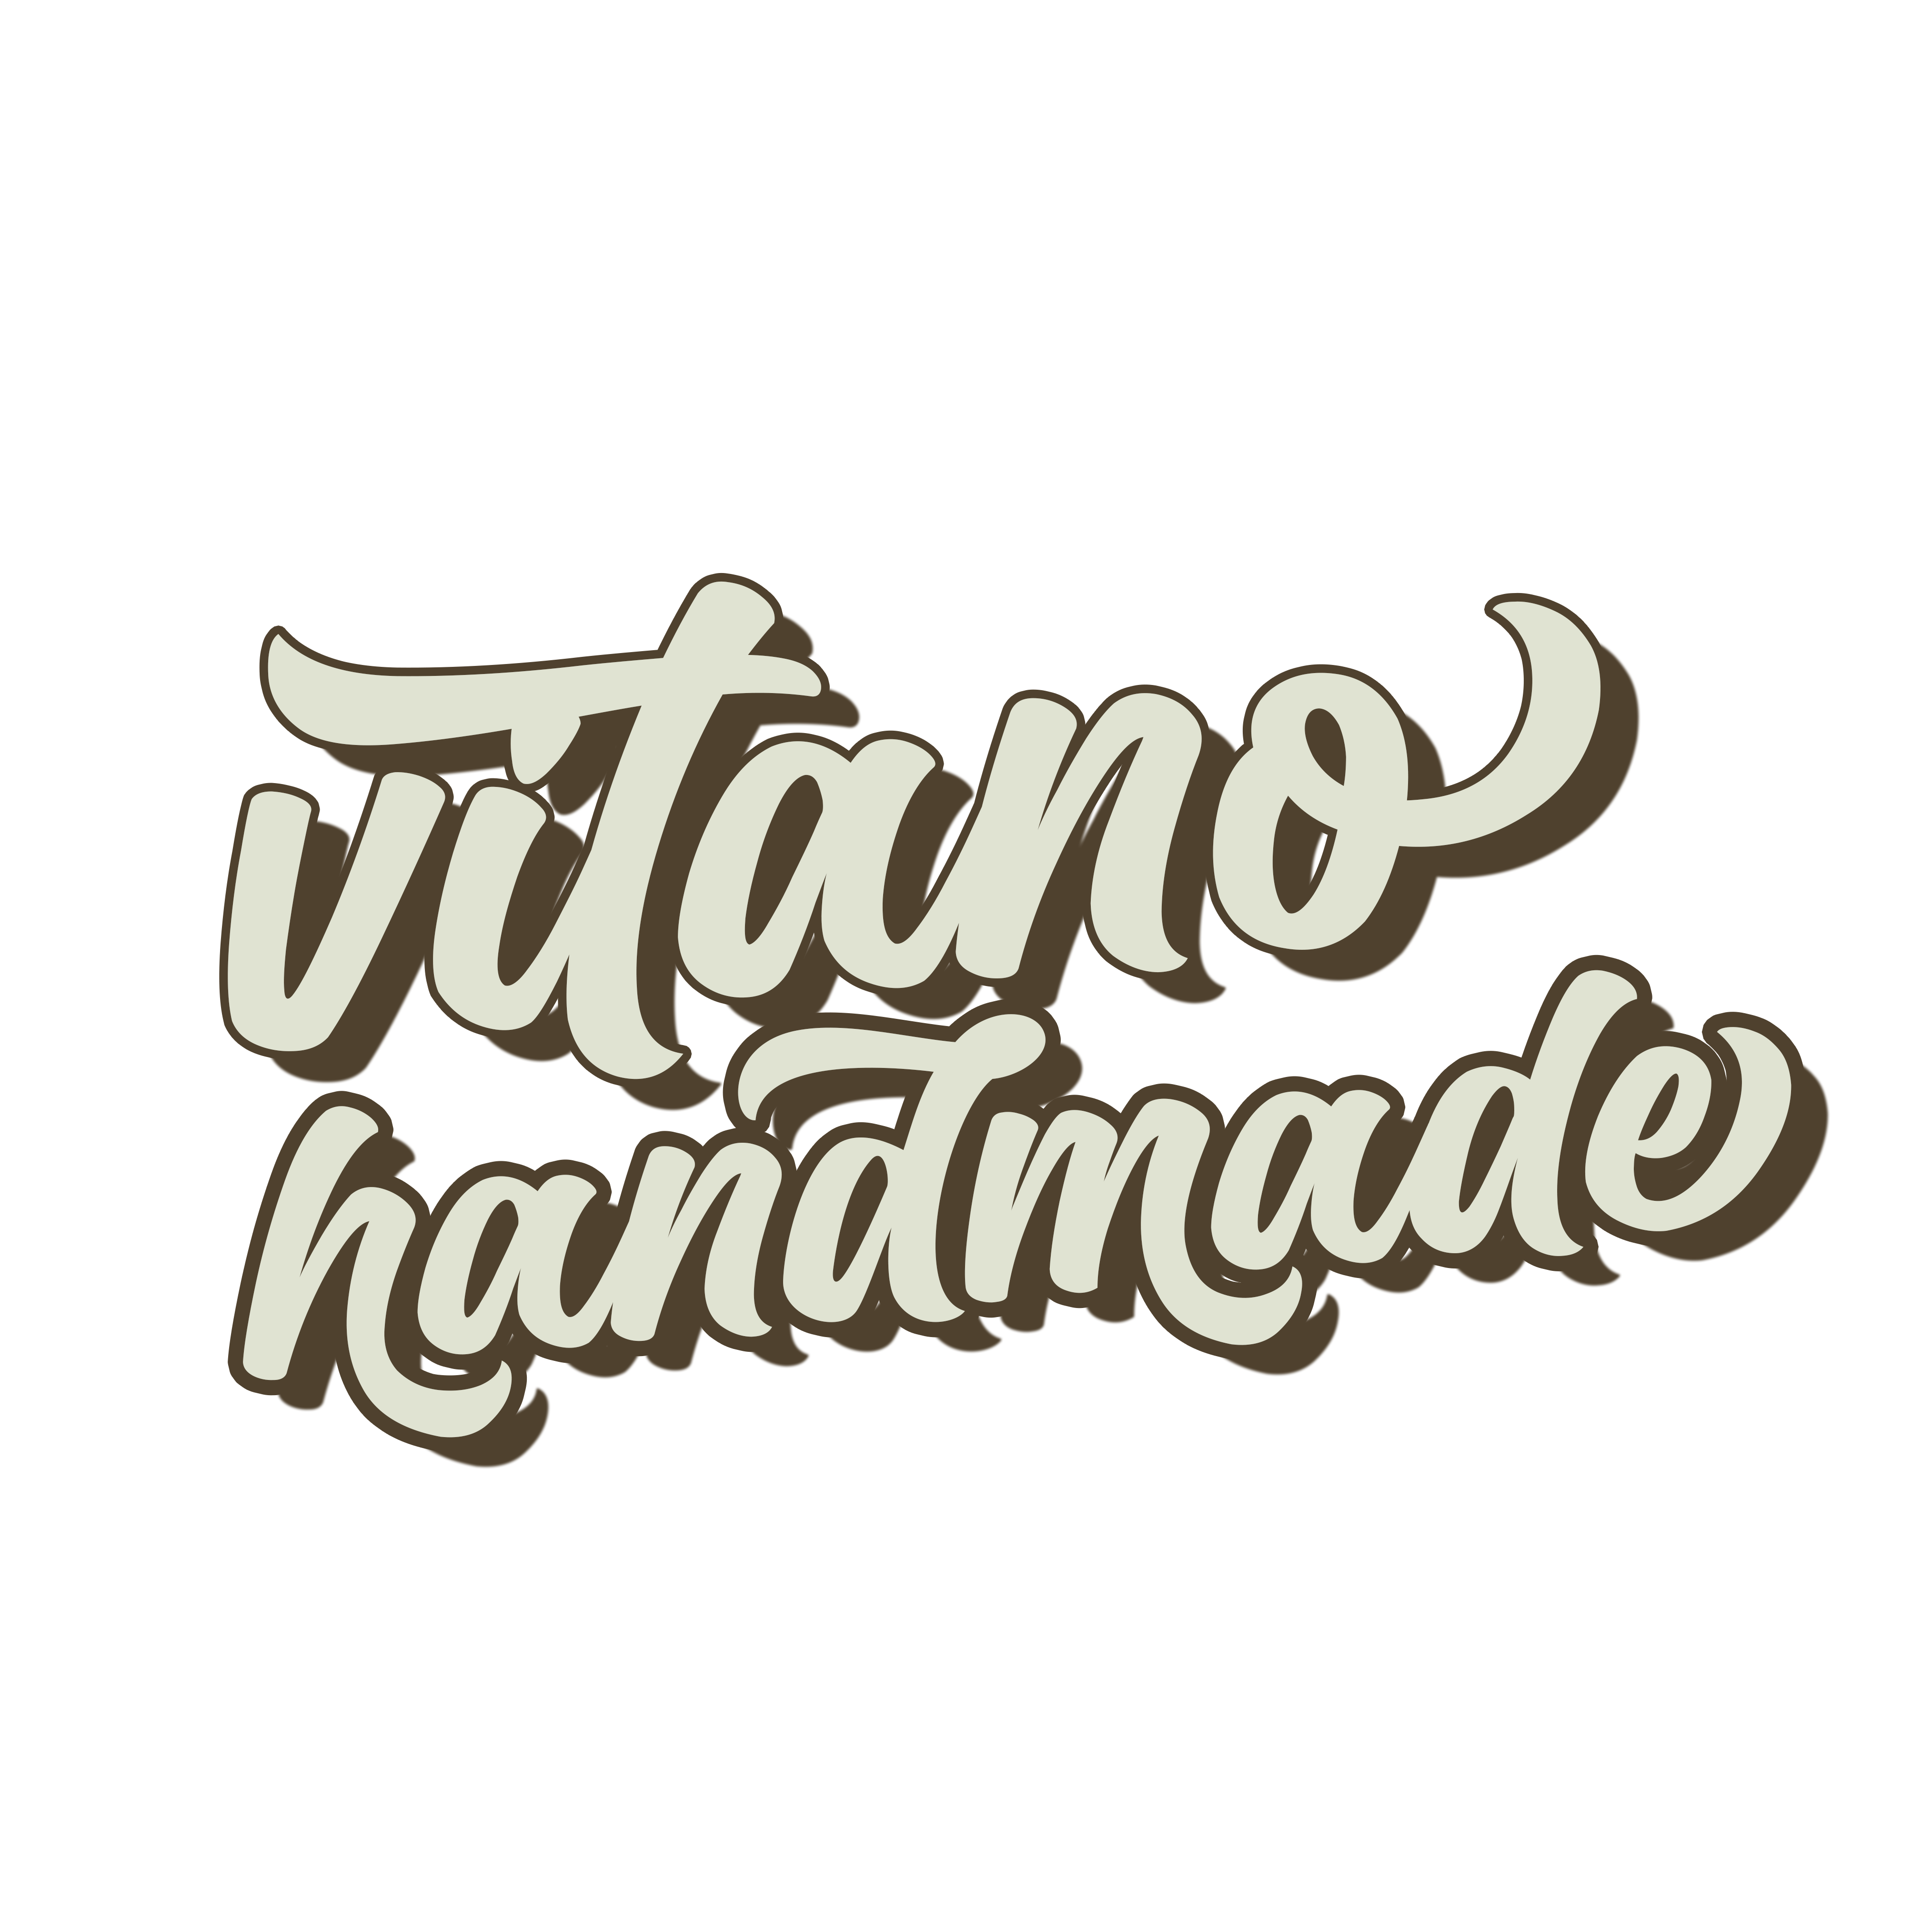 Vitano Handmade